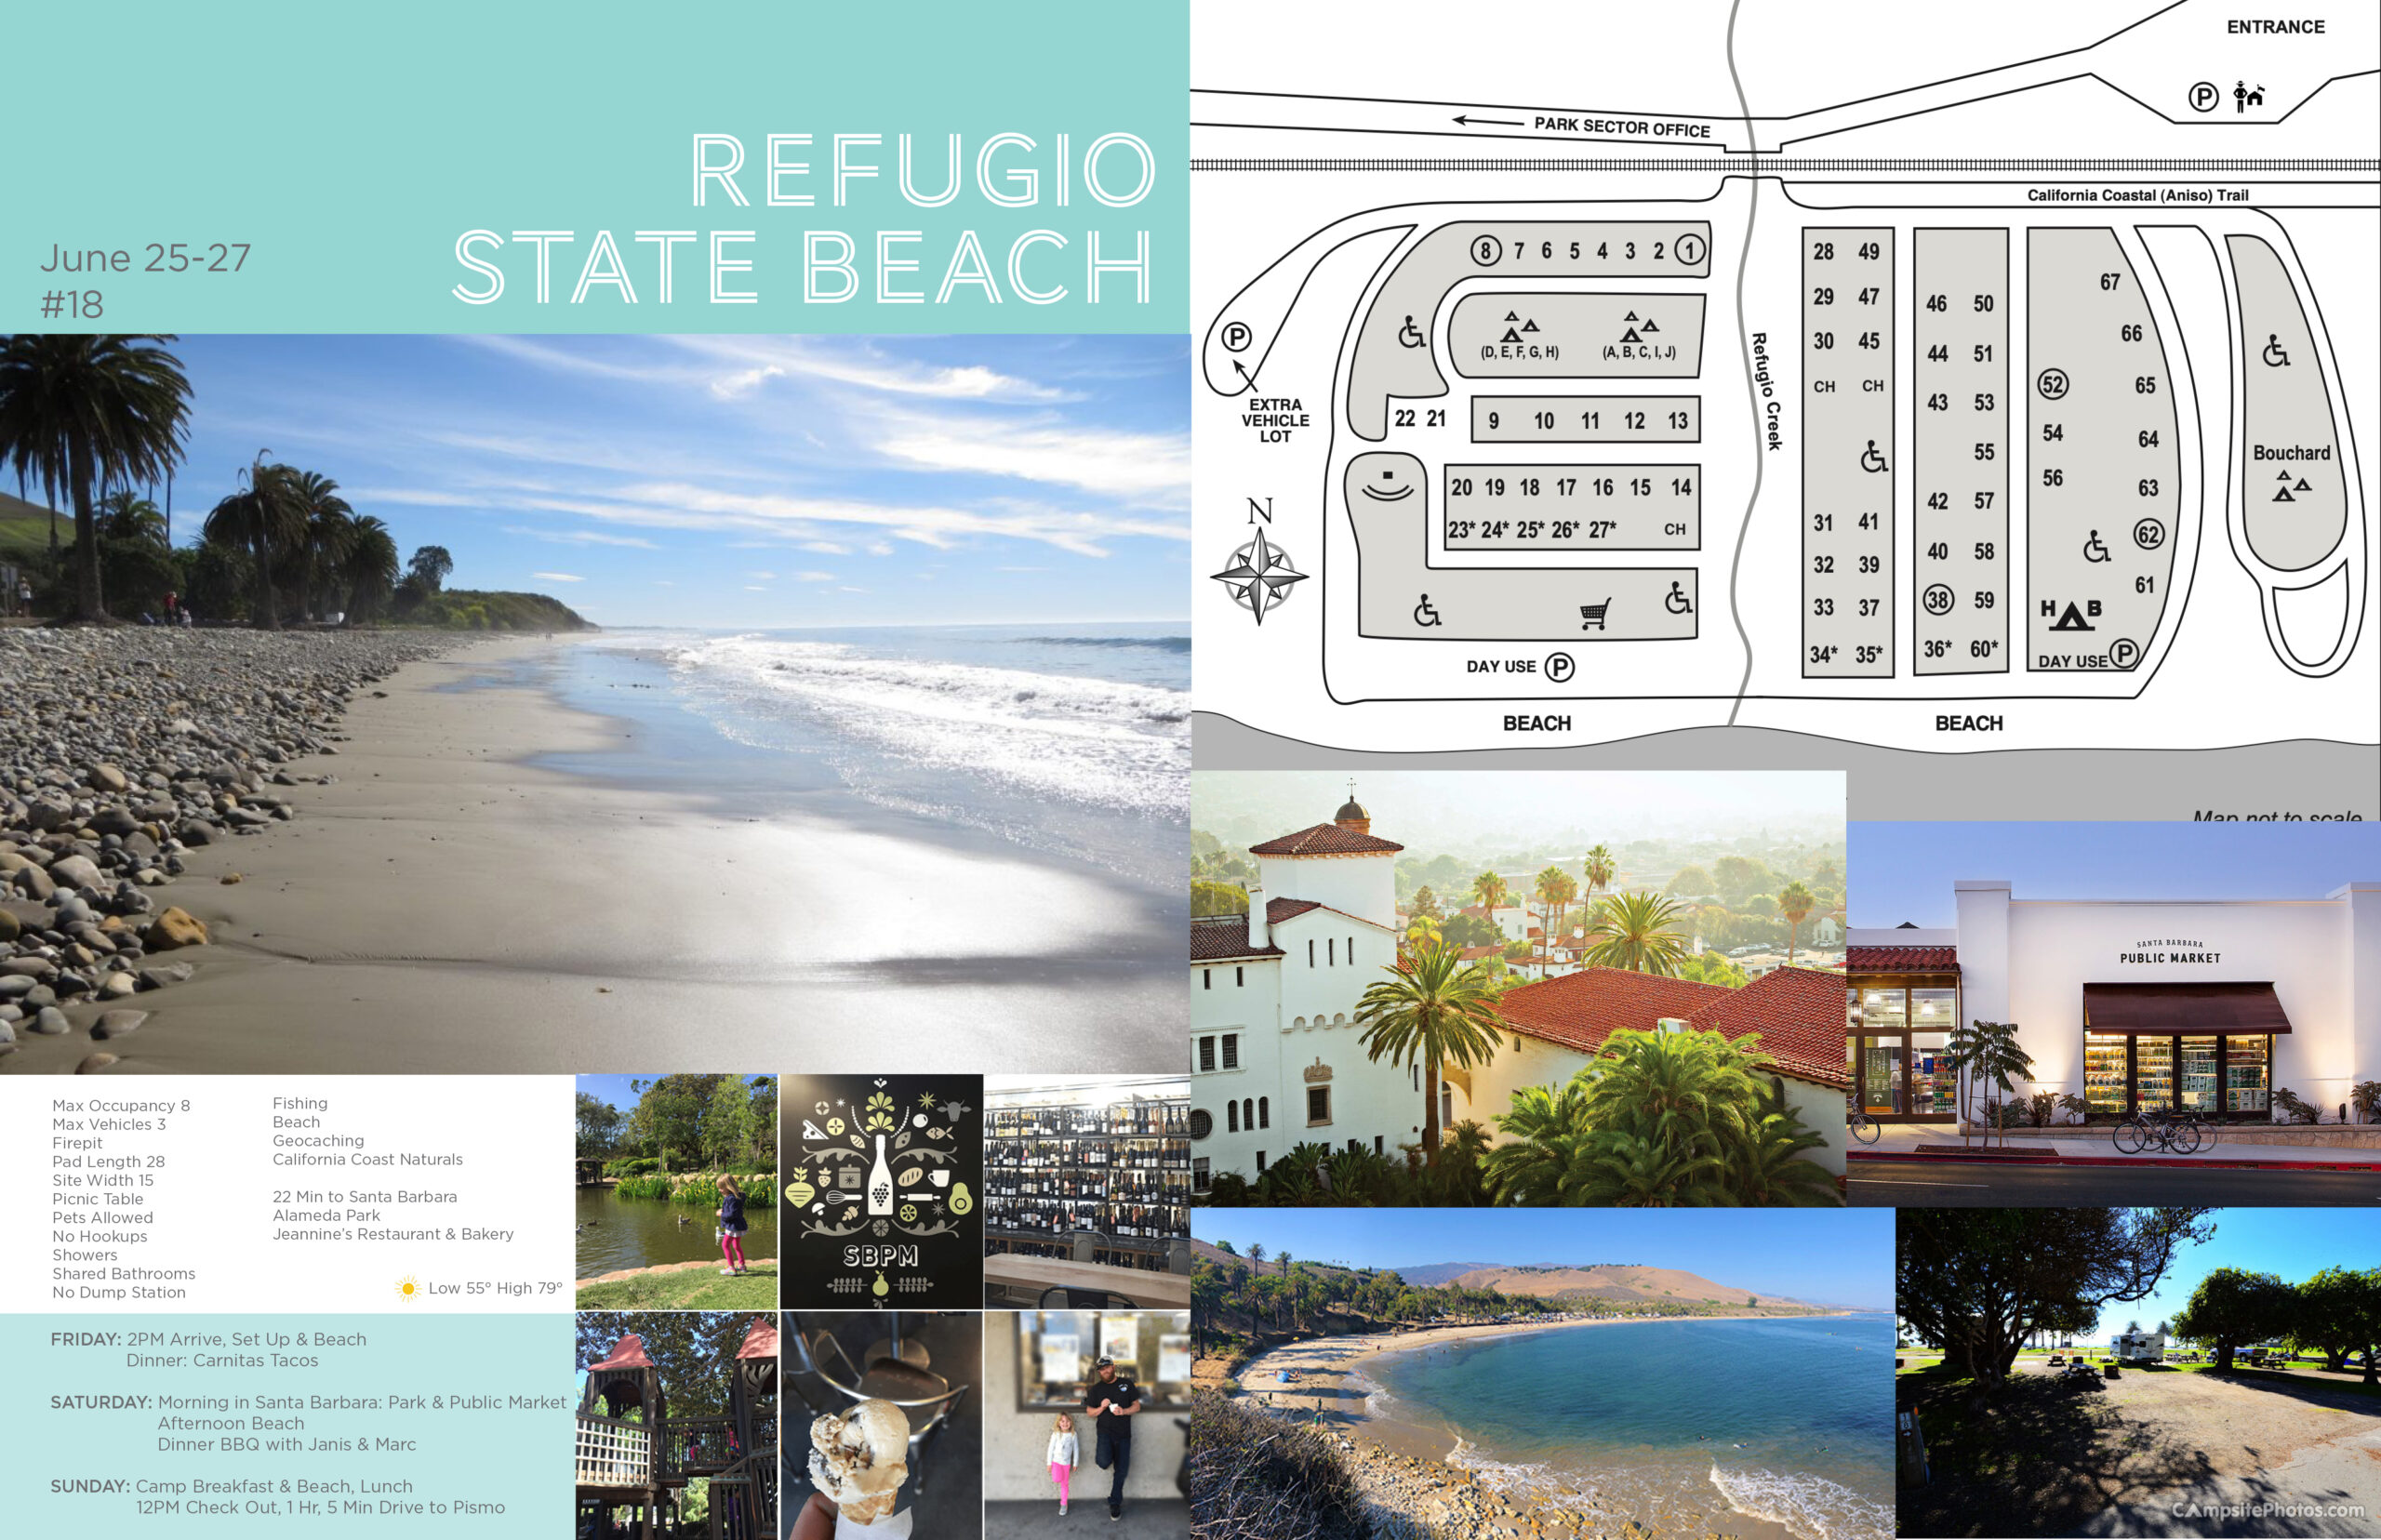 Refugio State Beach